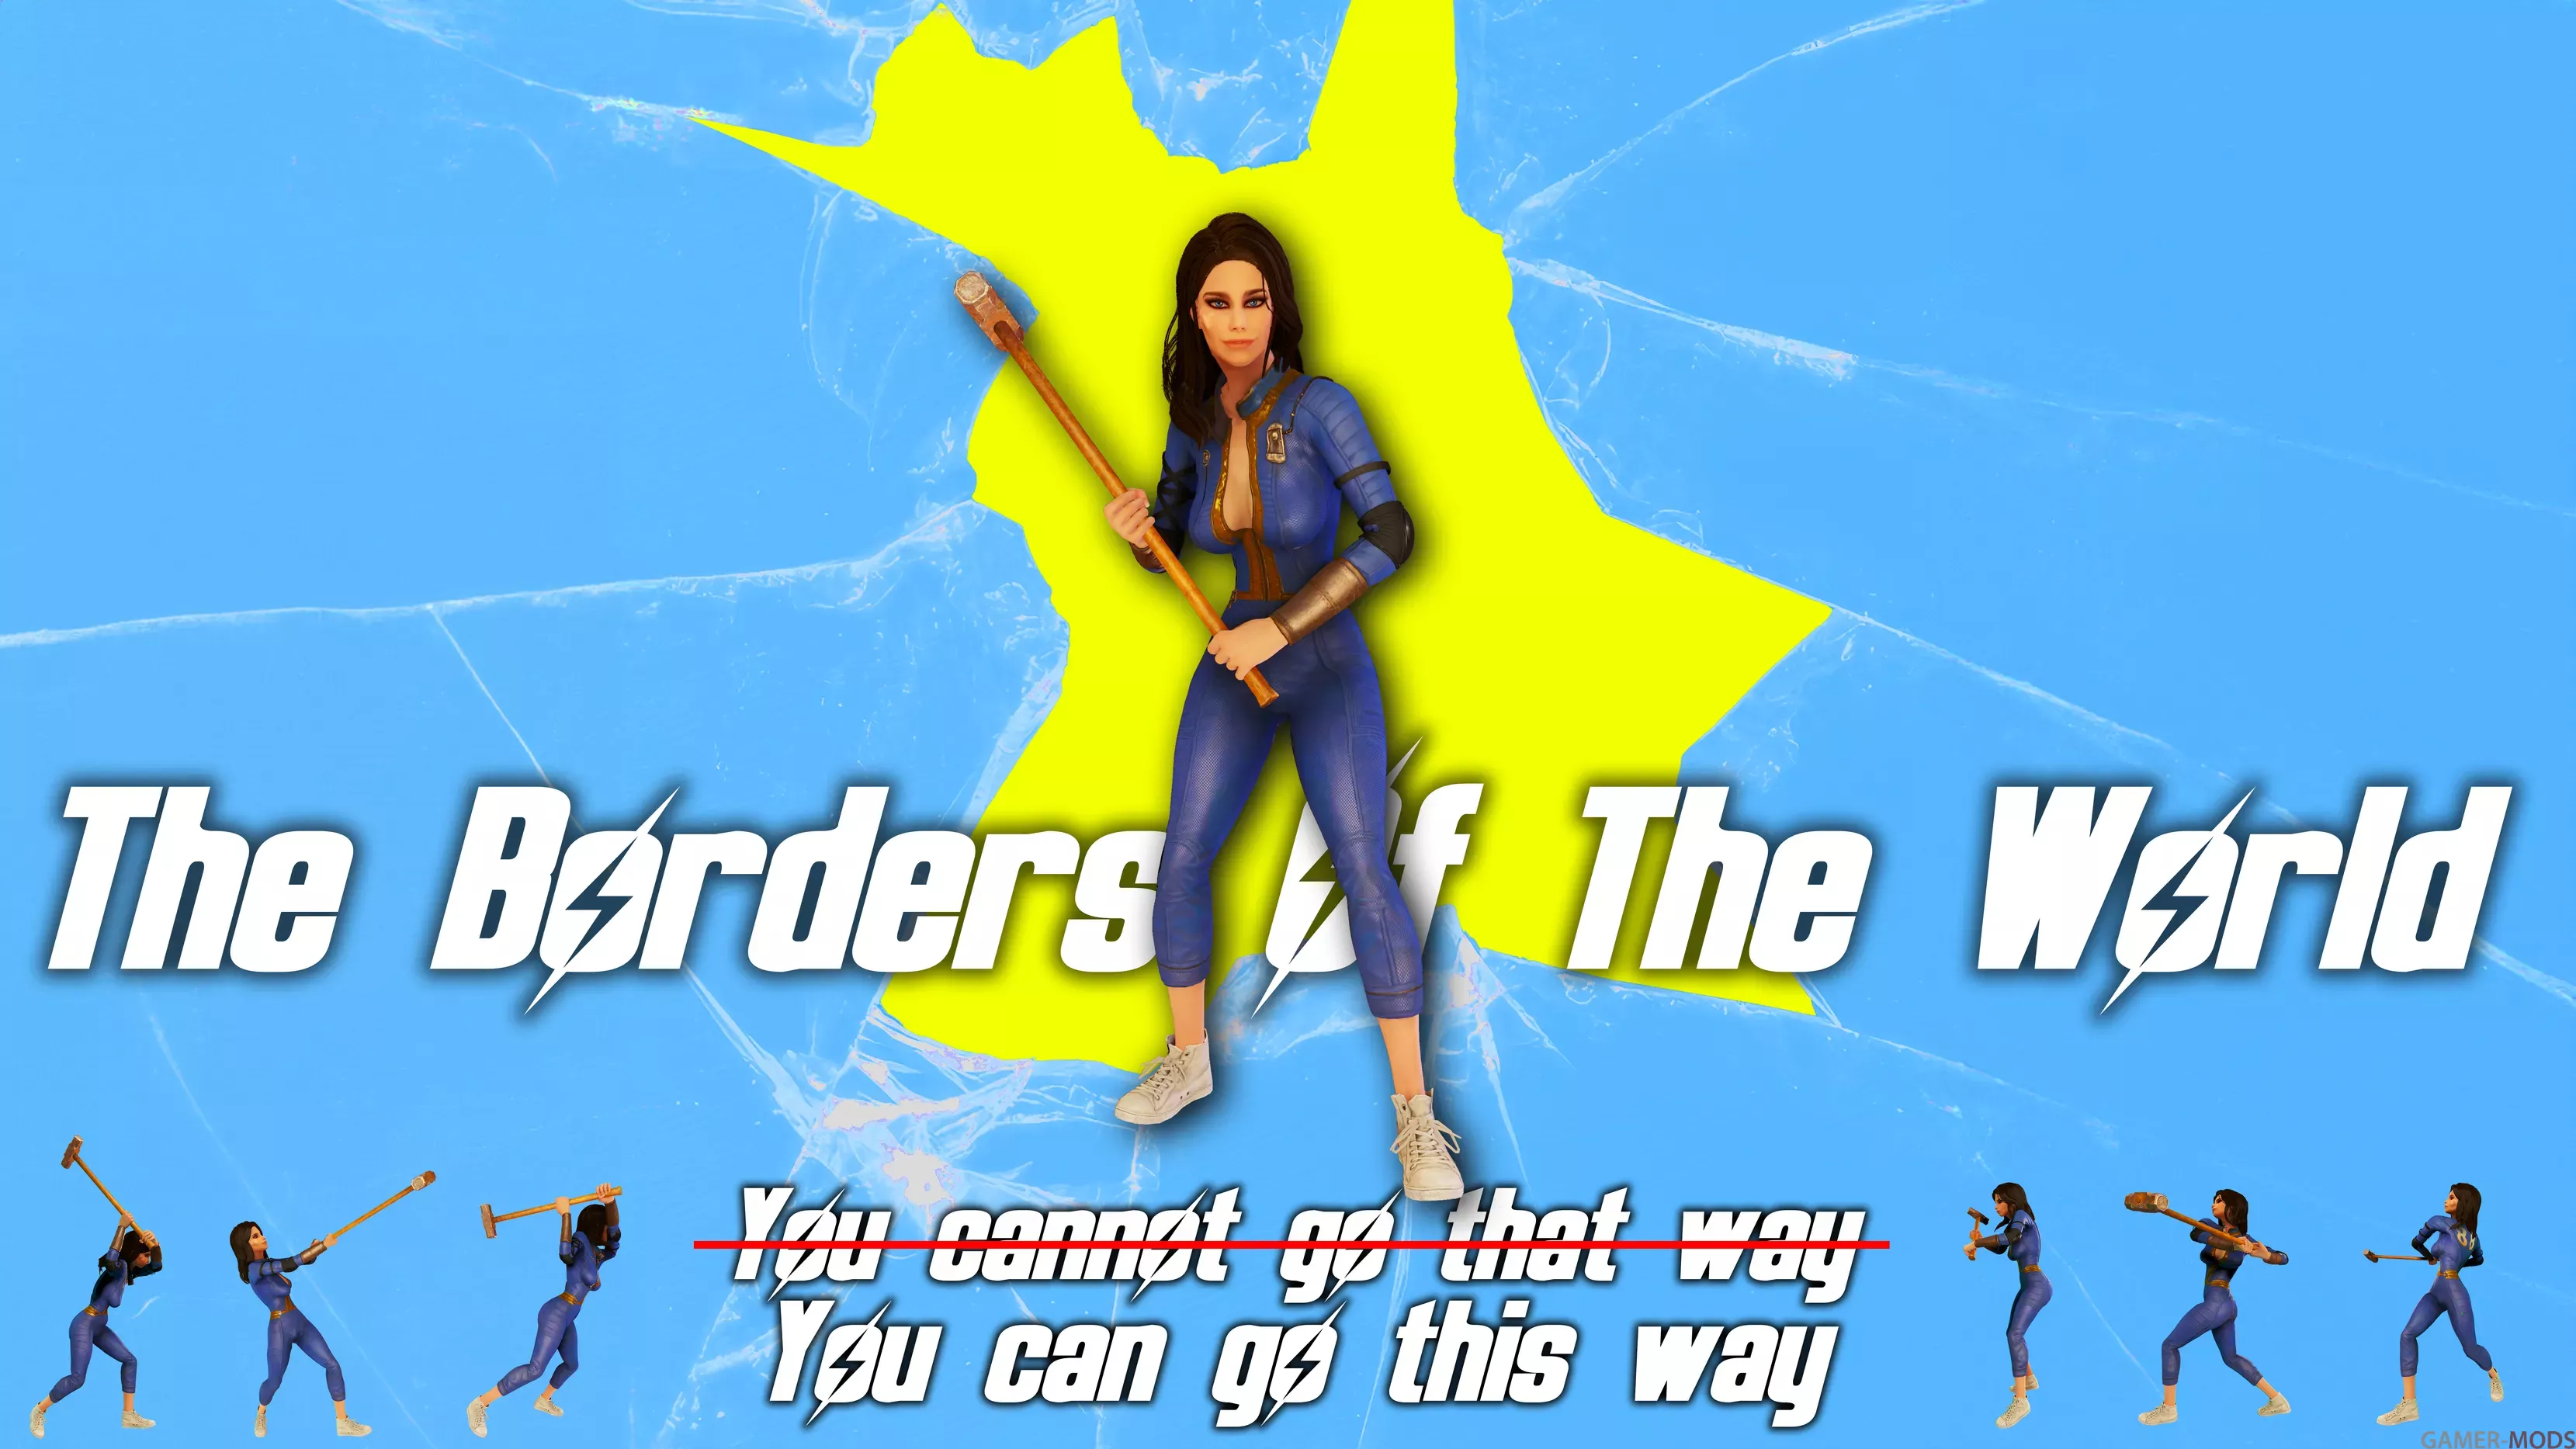 The Borders Of The World - Изменение границ мира, удаление невидимой стены